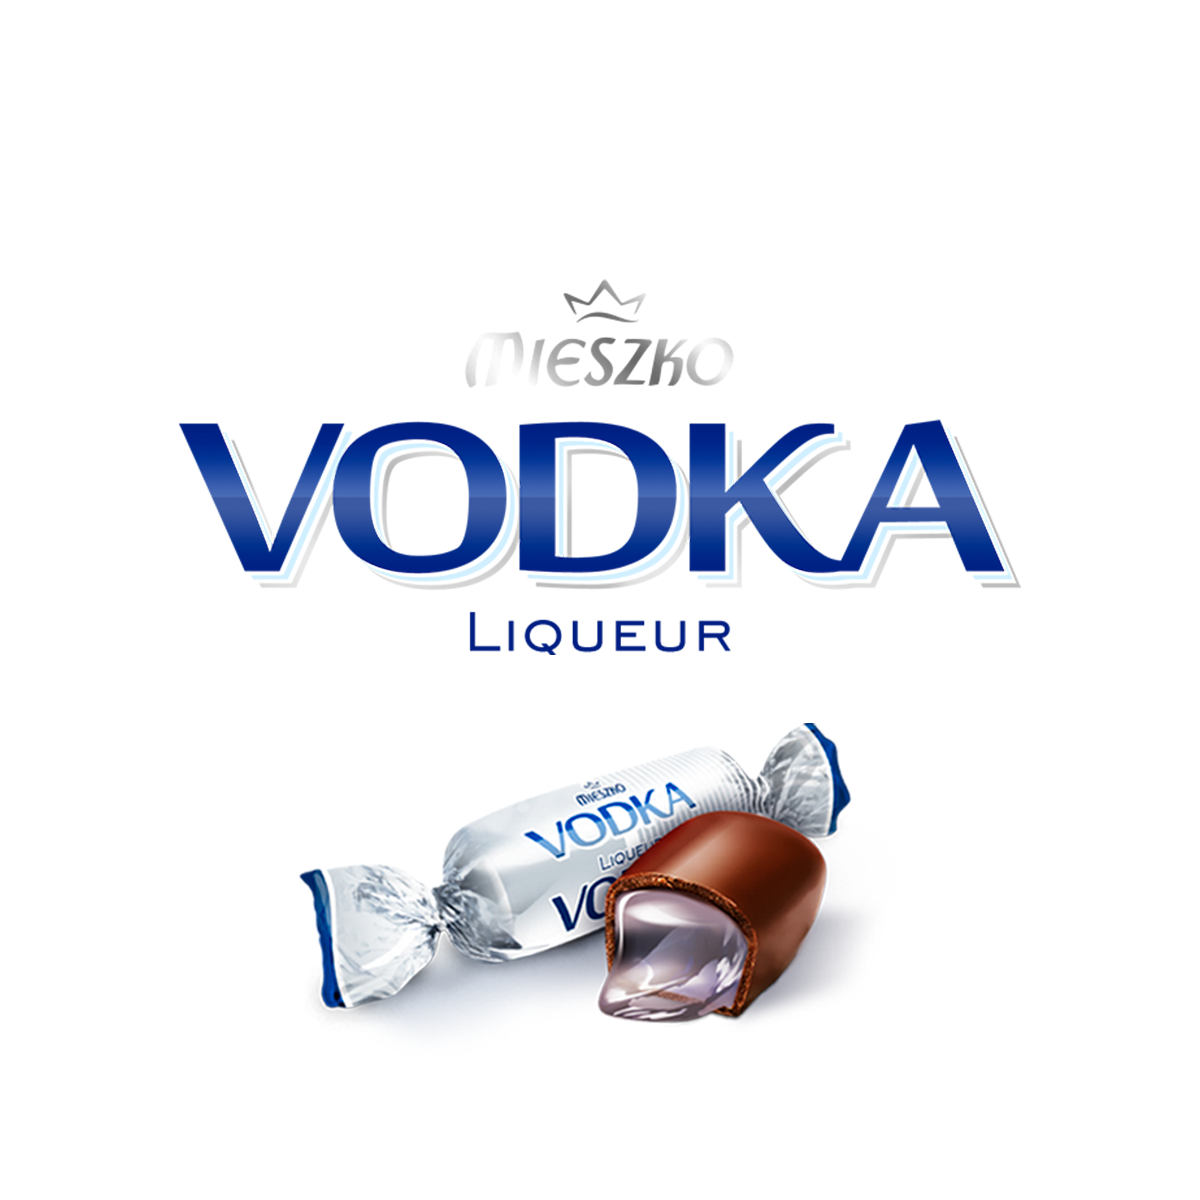 vodka_tlo